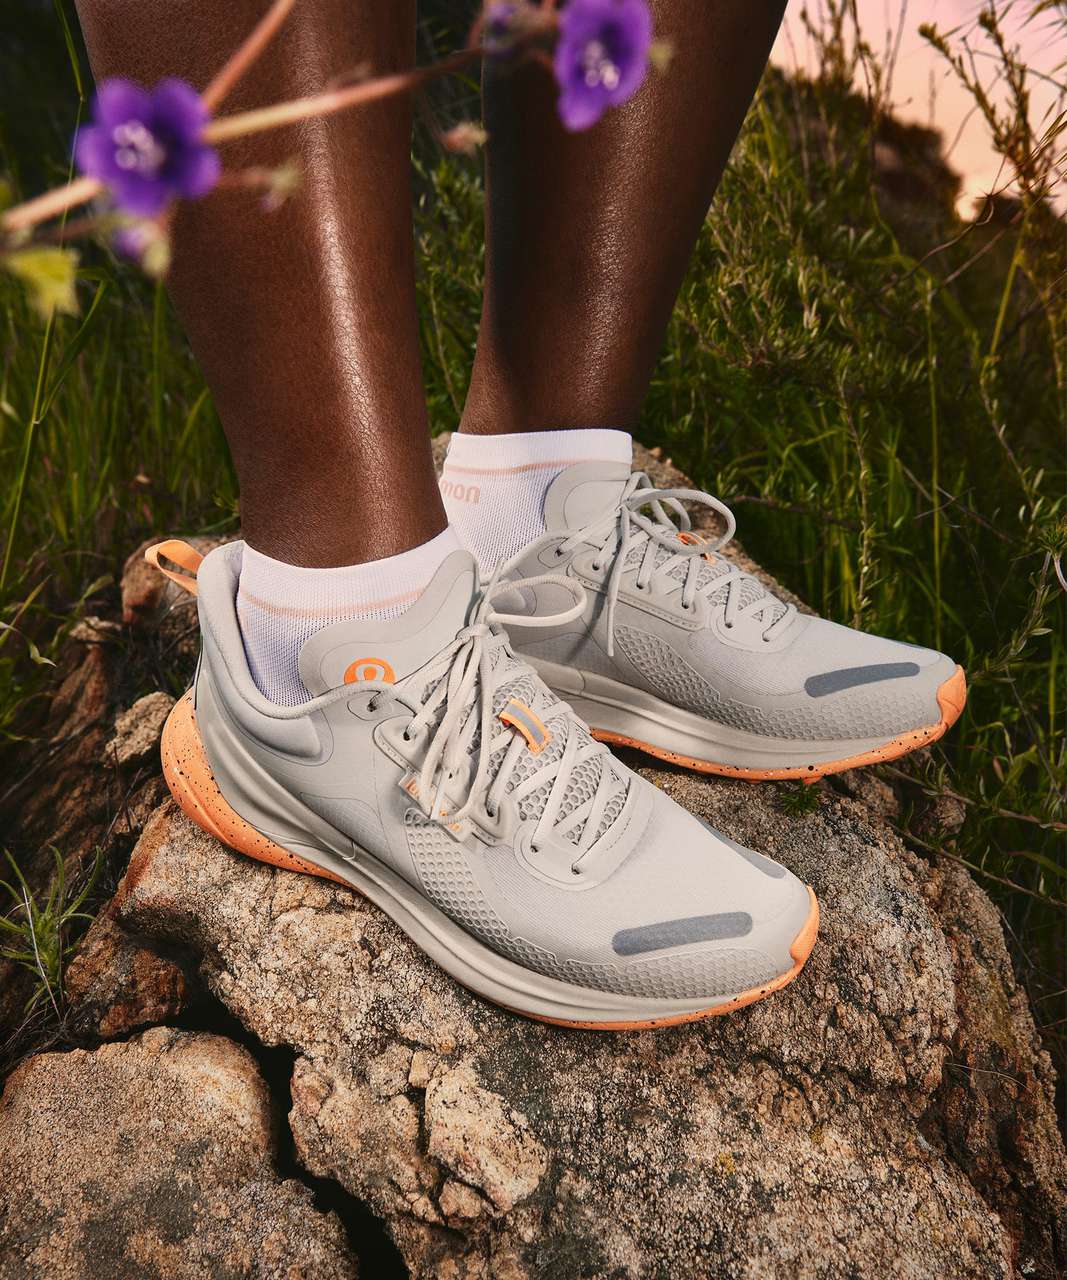 Lululemon Expands Women's Footwear With Road-To-Trail Blissfeel Trail Shoe